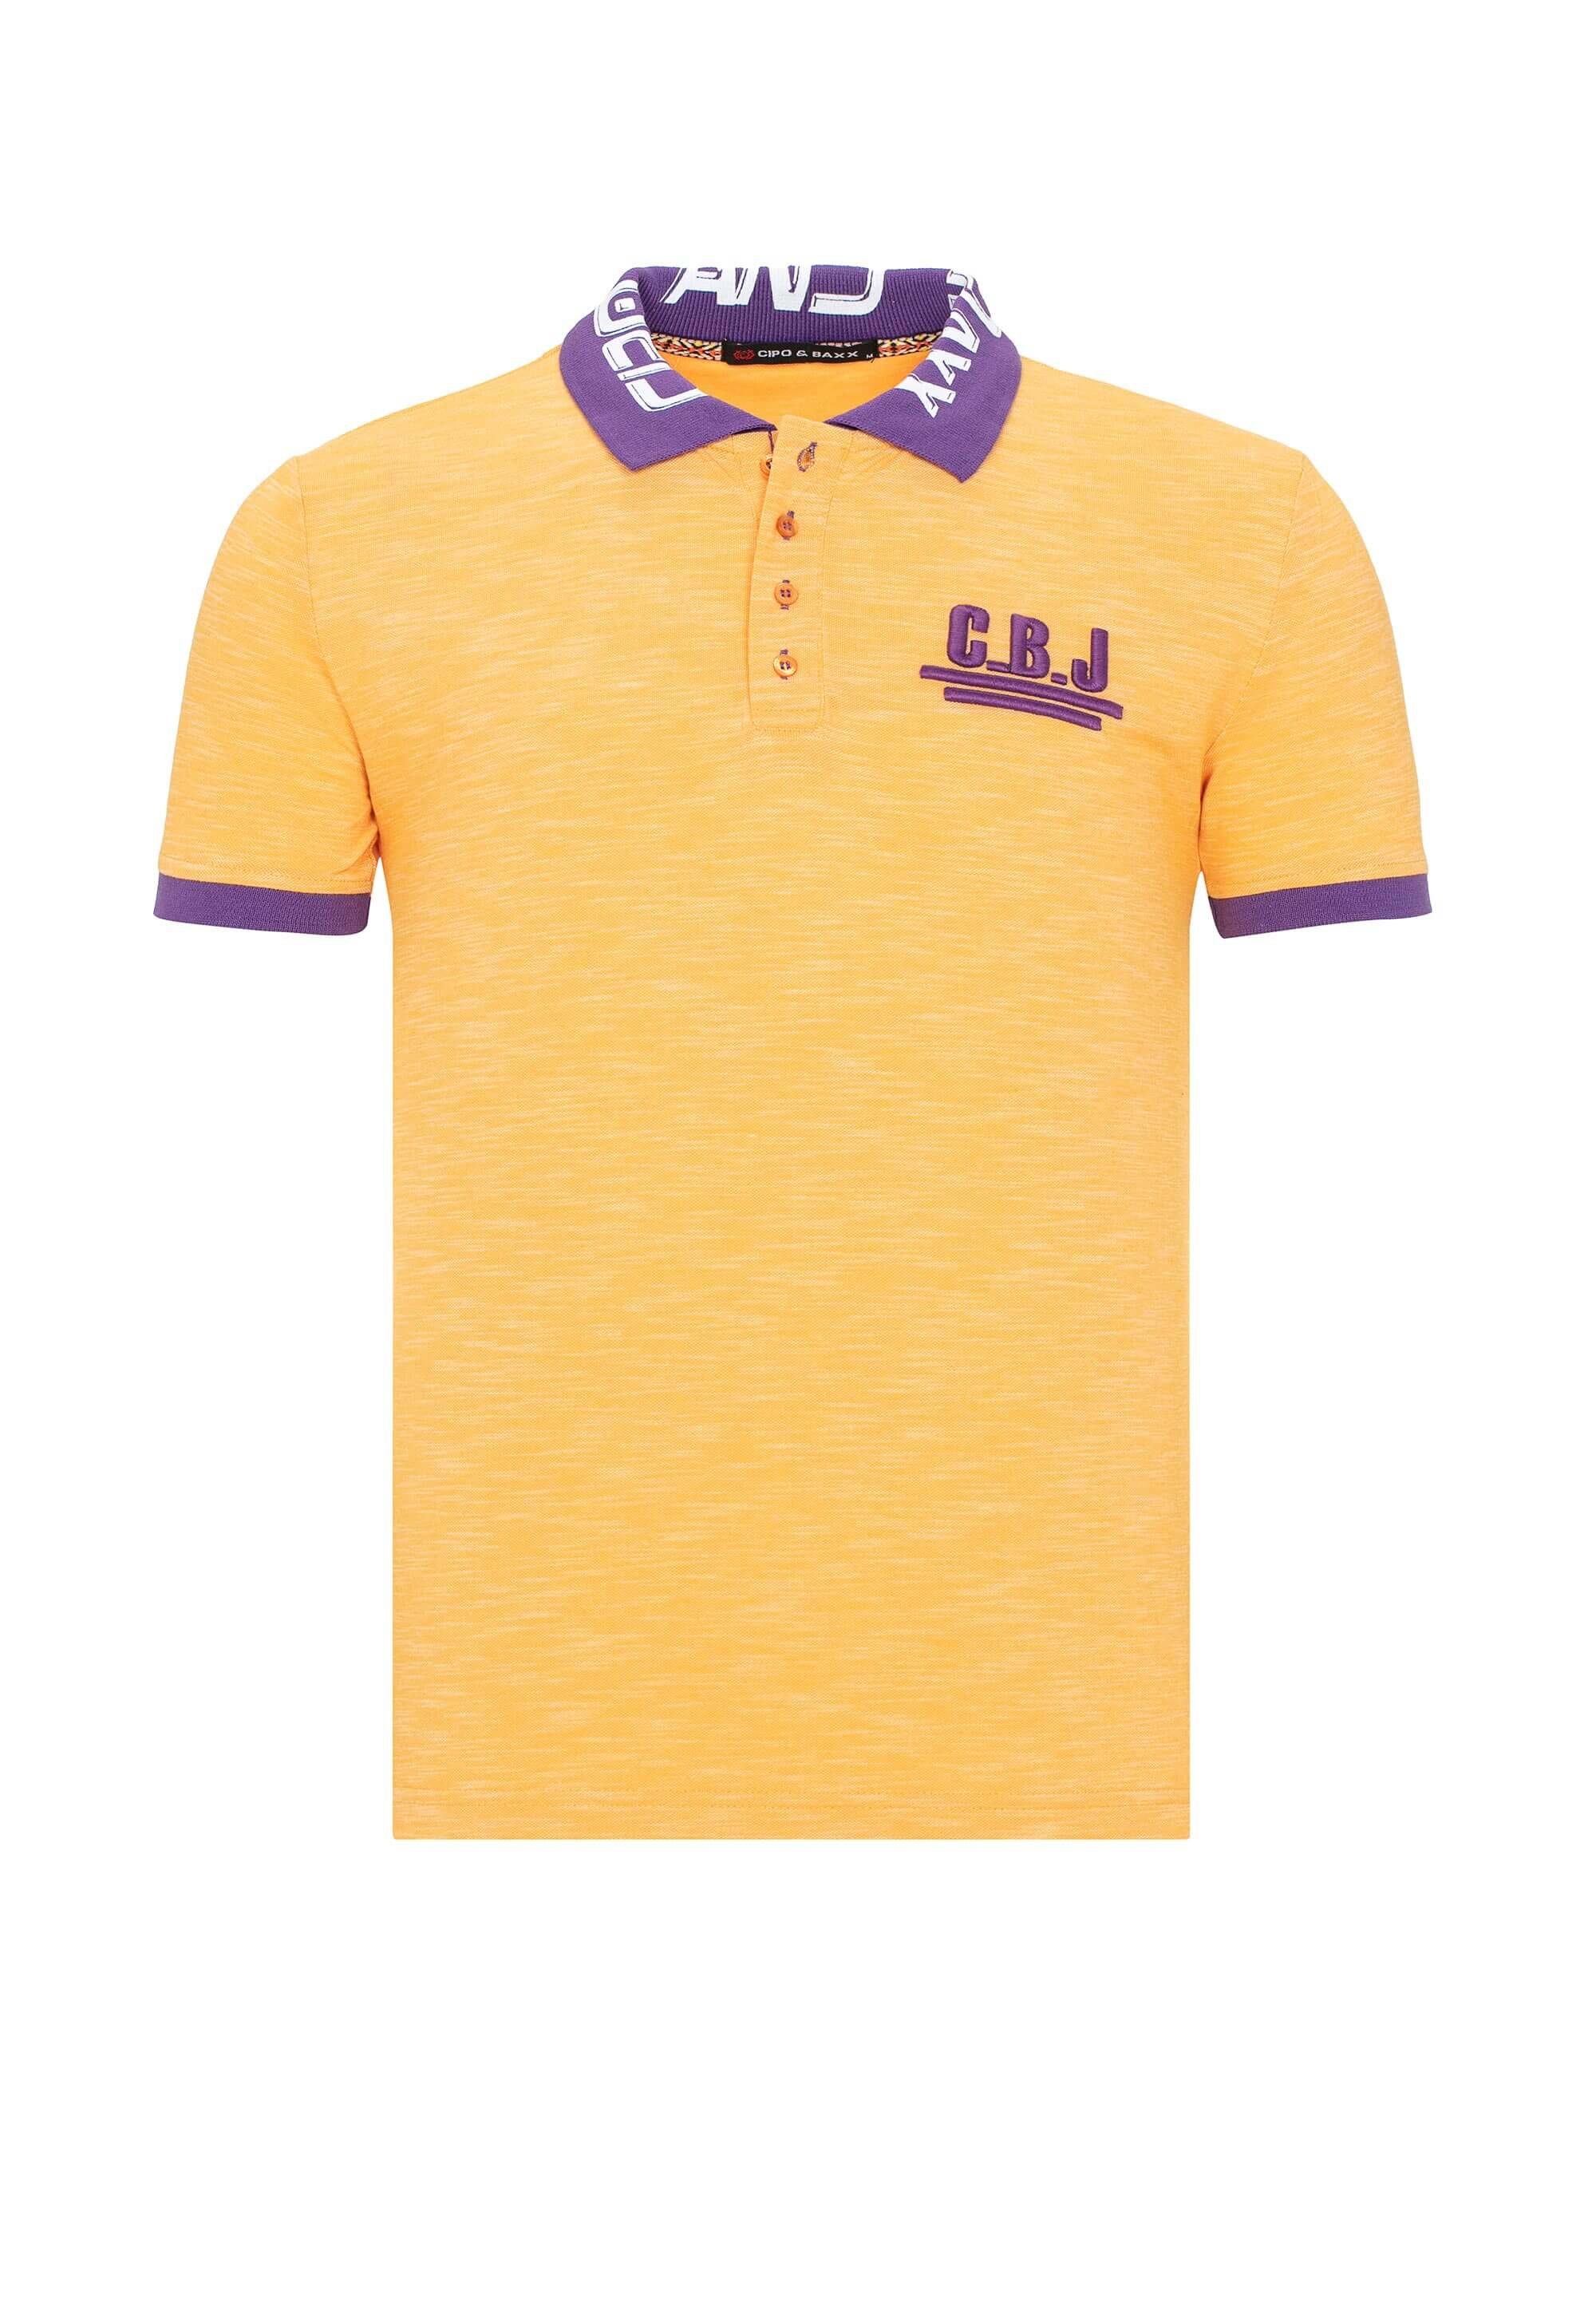 Logodruck Baxx Kragen gelb am Cipo & mit Poloshirt